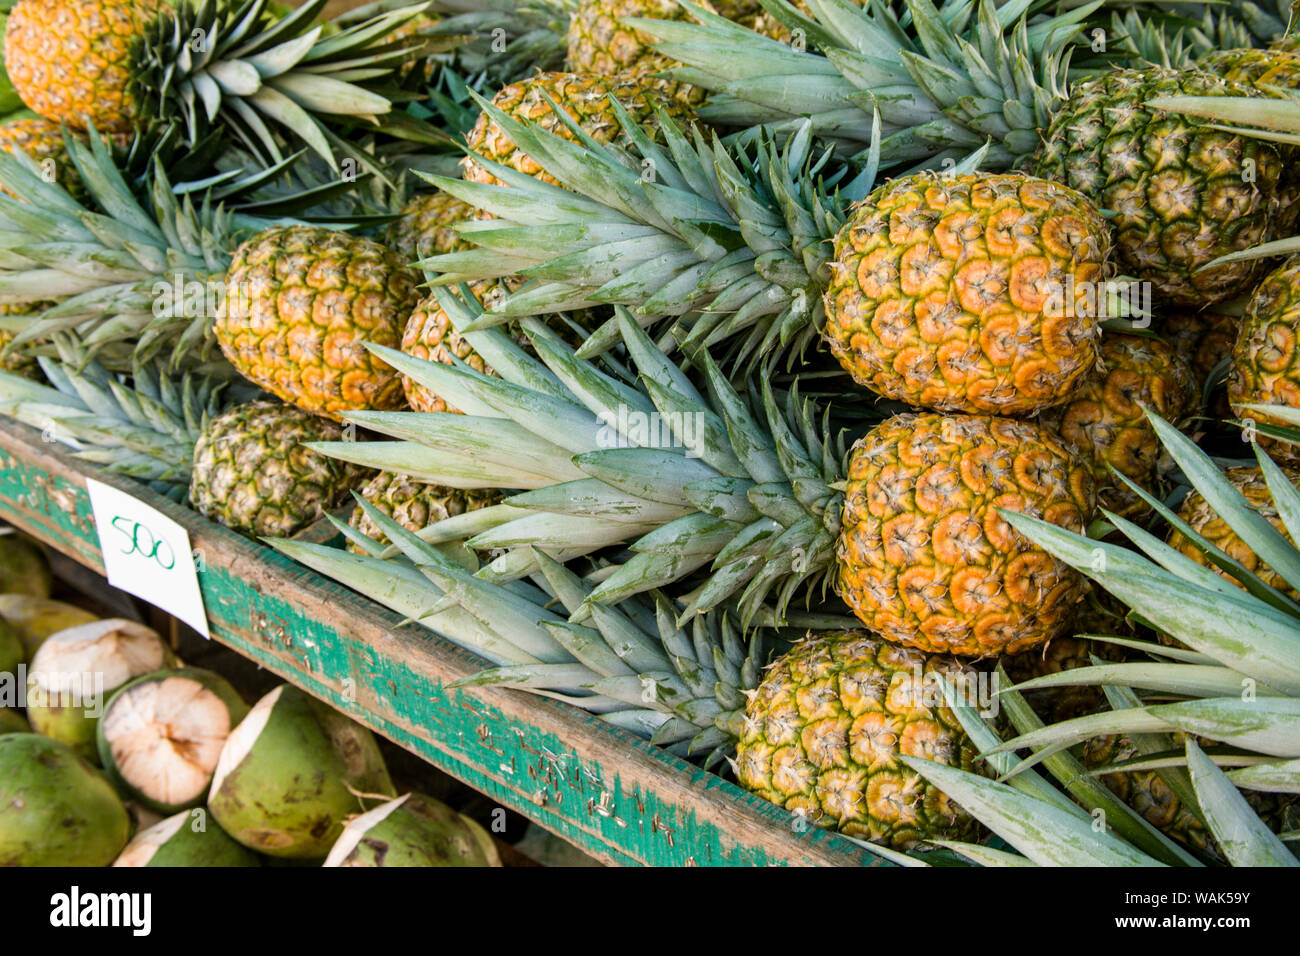 La Garita, Costa Rica. Ananas in vendita presso il La Garita mercato agricolo. Foto Stock